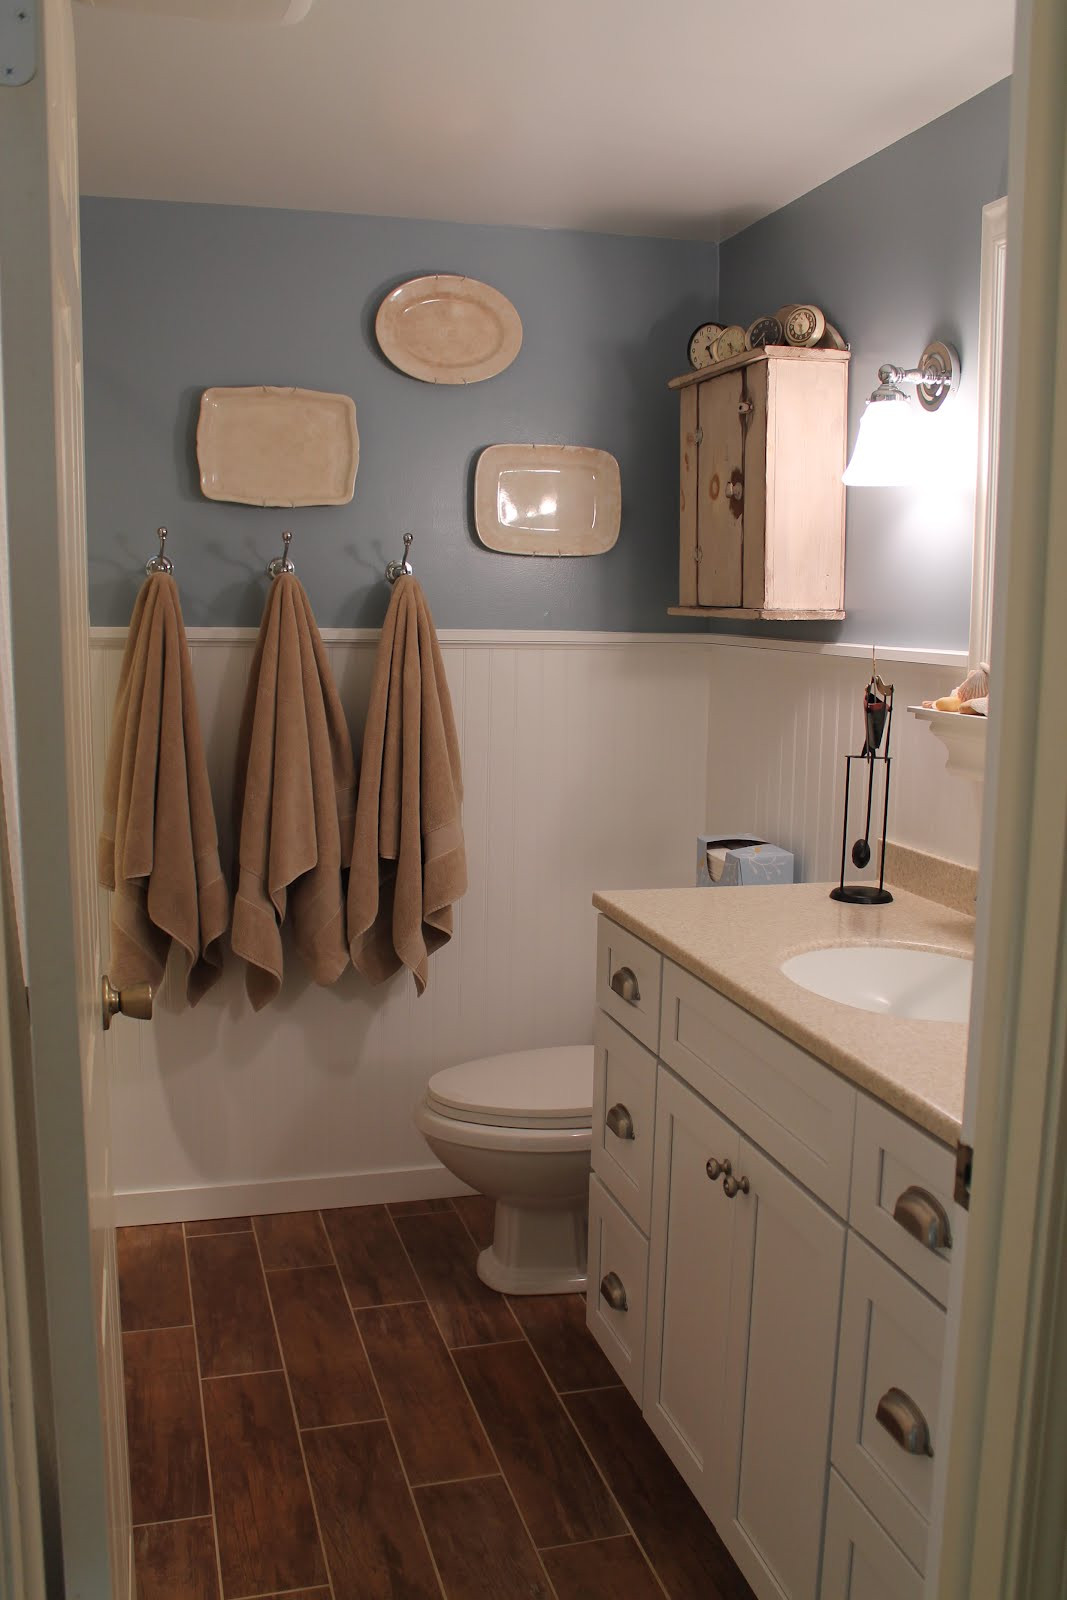 Wood Tile In Bathrooms
 Remodelaholic